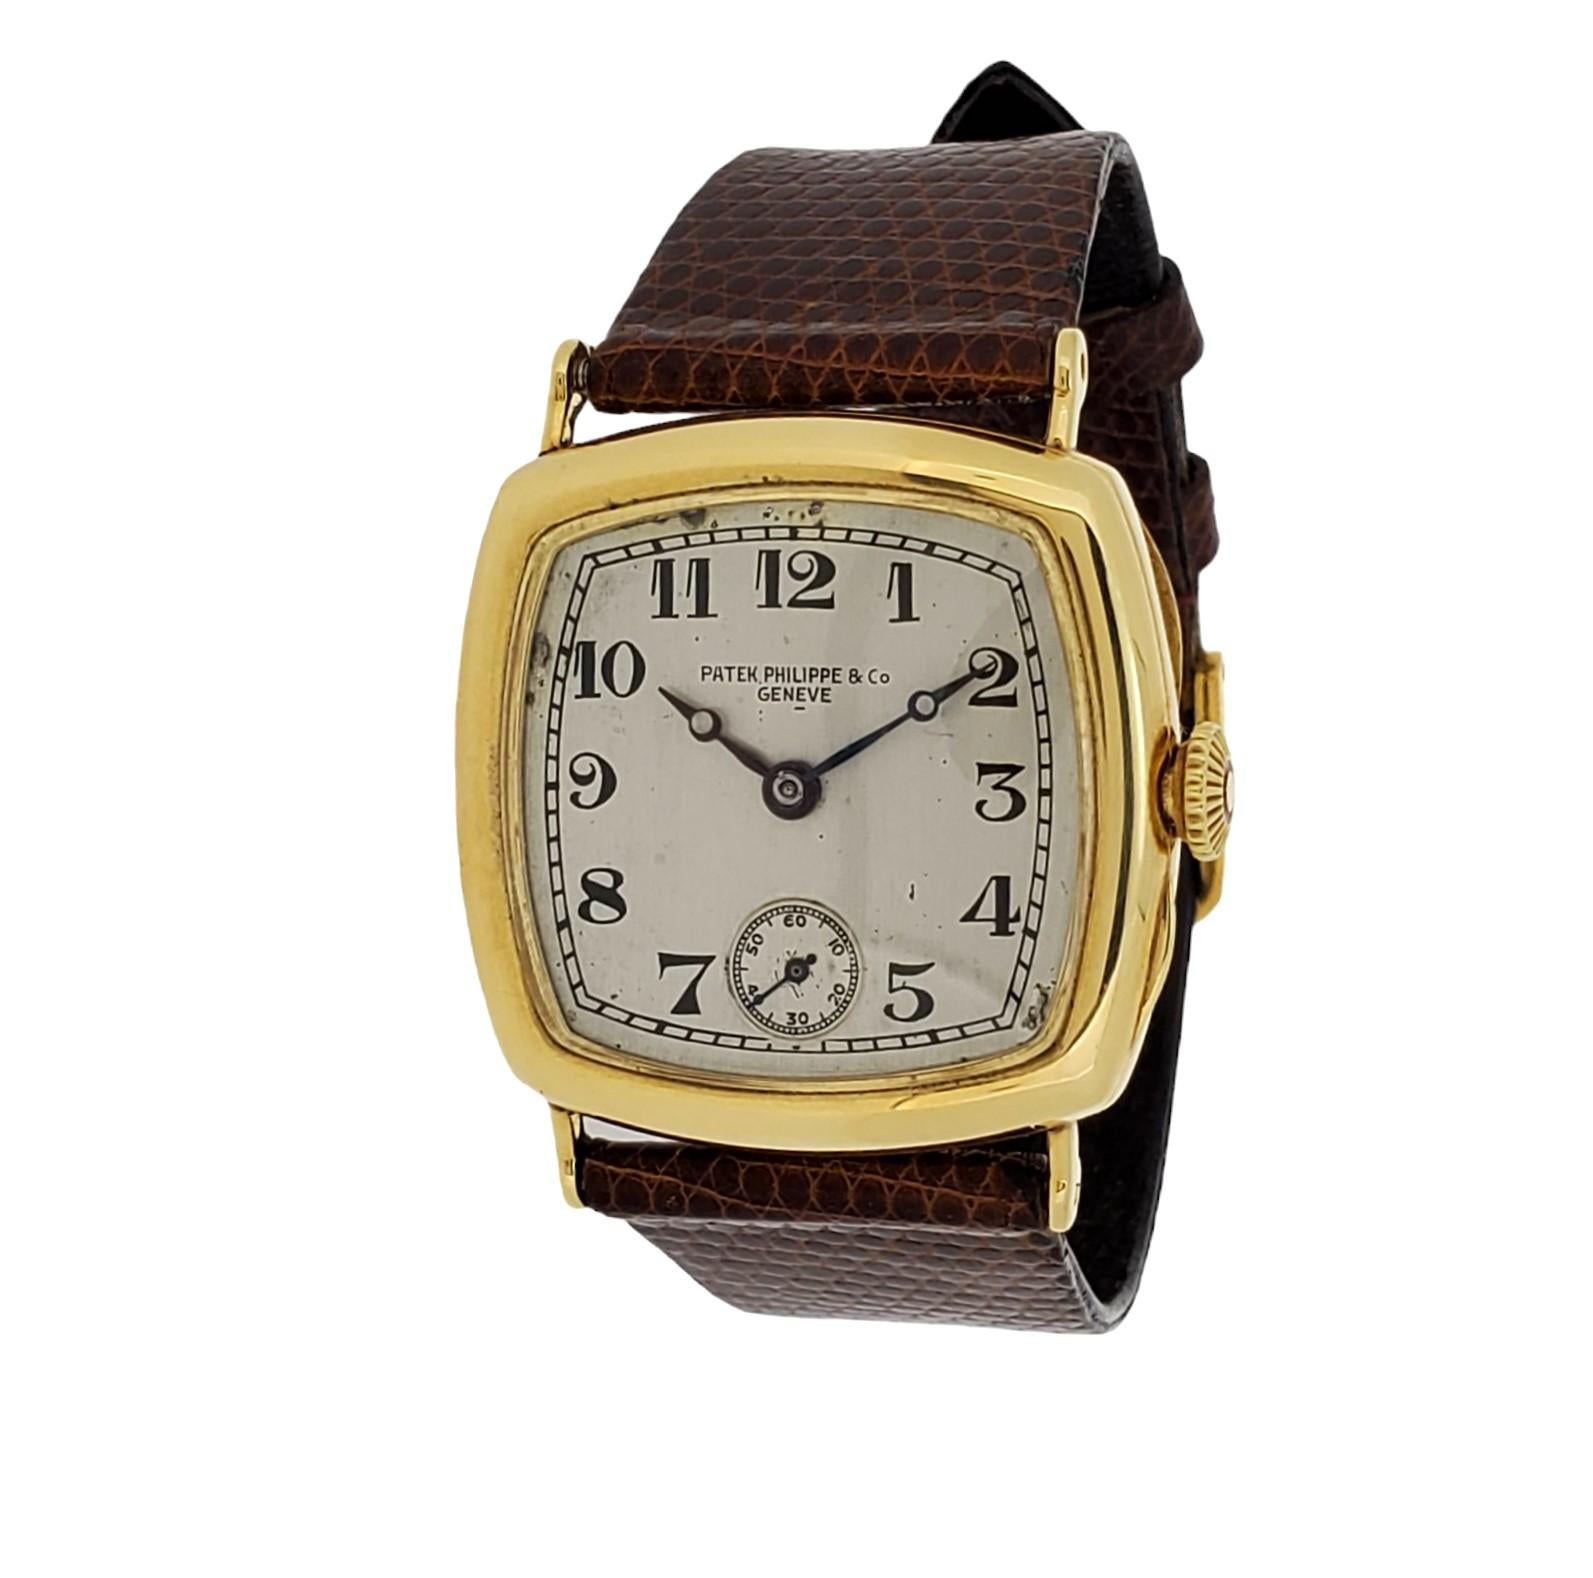 Patek Philippe Early Art Deco Cushion shape watch Circa 1927-1928,  La montre est fabriquée en or jaune 18 carats et mesure 31 x 31 mm.  La montre est équipée d'un mouvement calibre 10